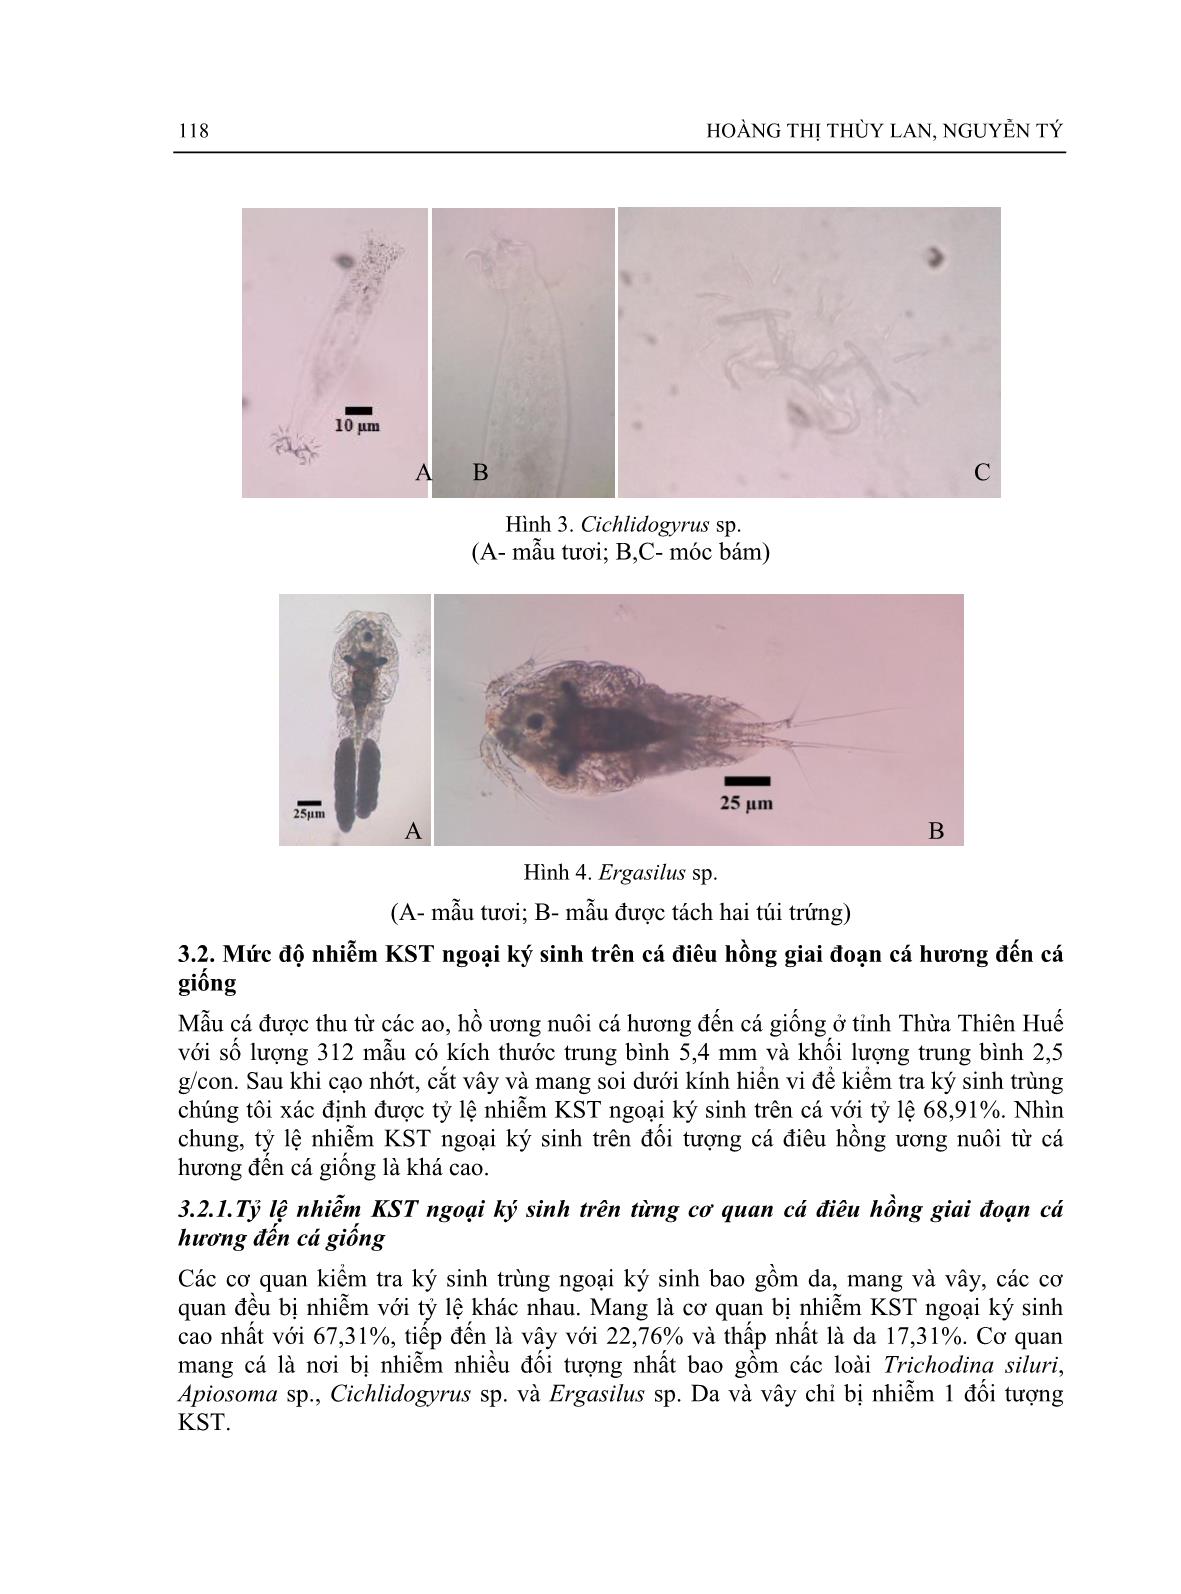 Một số ký sinh trùng ngoại ký sinh trên cá điêu hồng oreochromis sp. giai đoạn cá hương đến cá giống nuôi ở tỉnh Thừa Thiên Huế trang 4